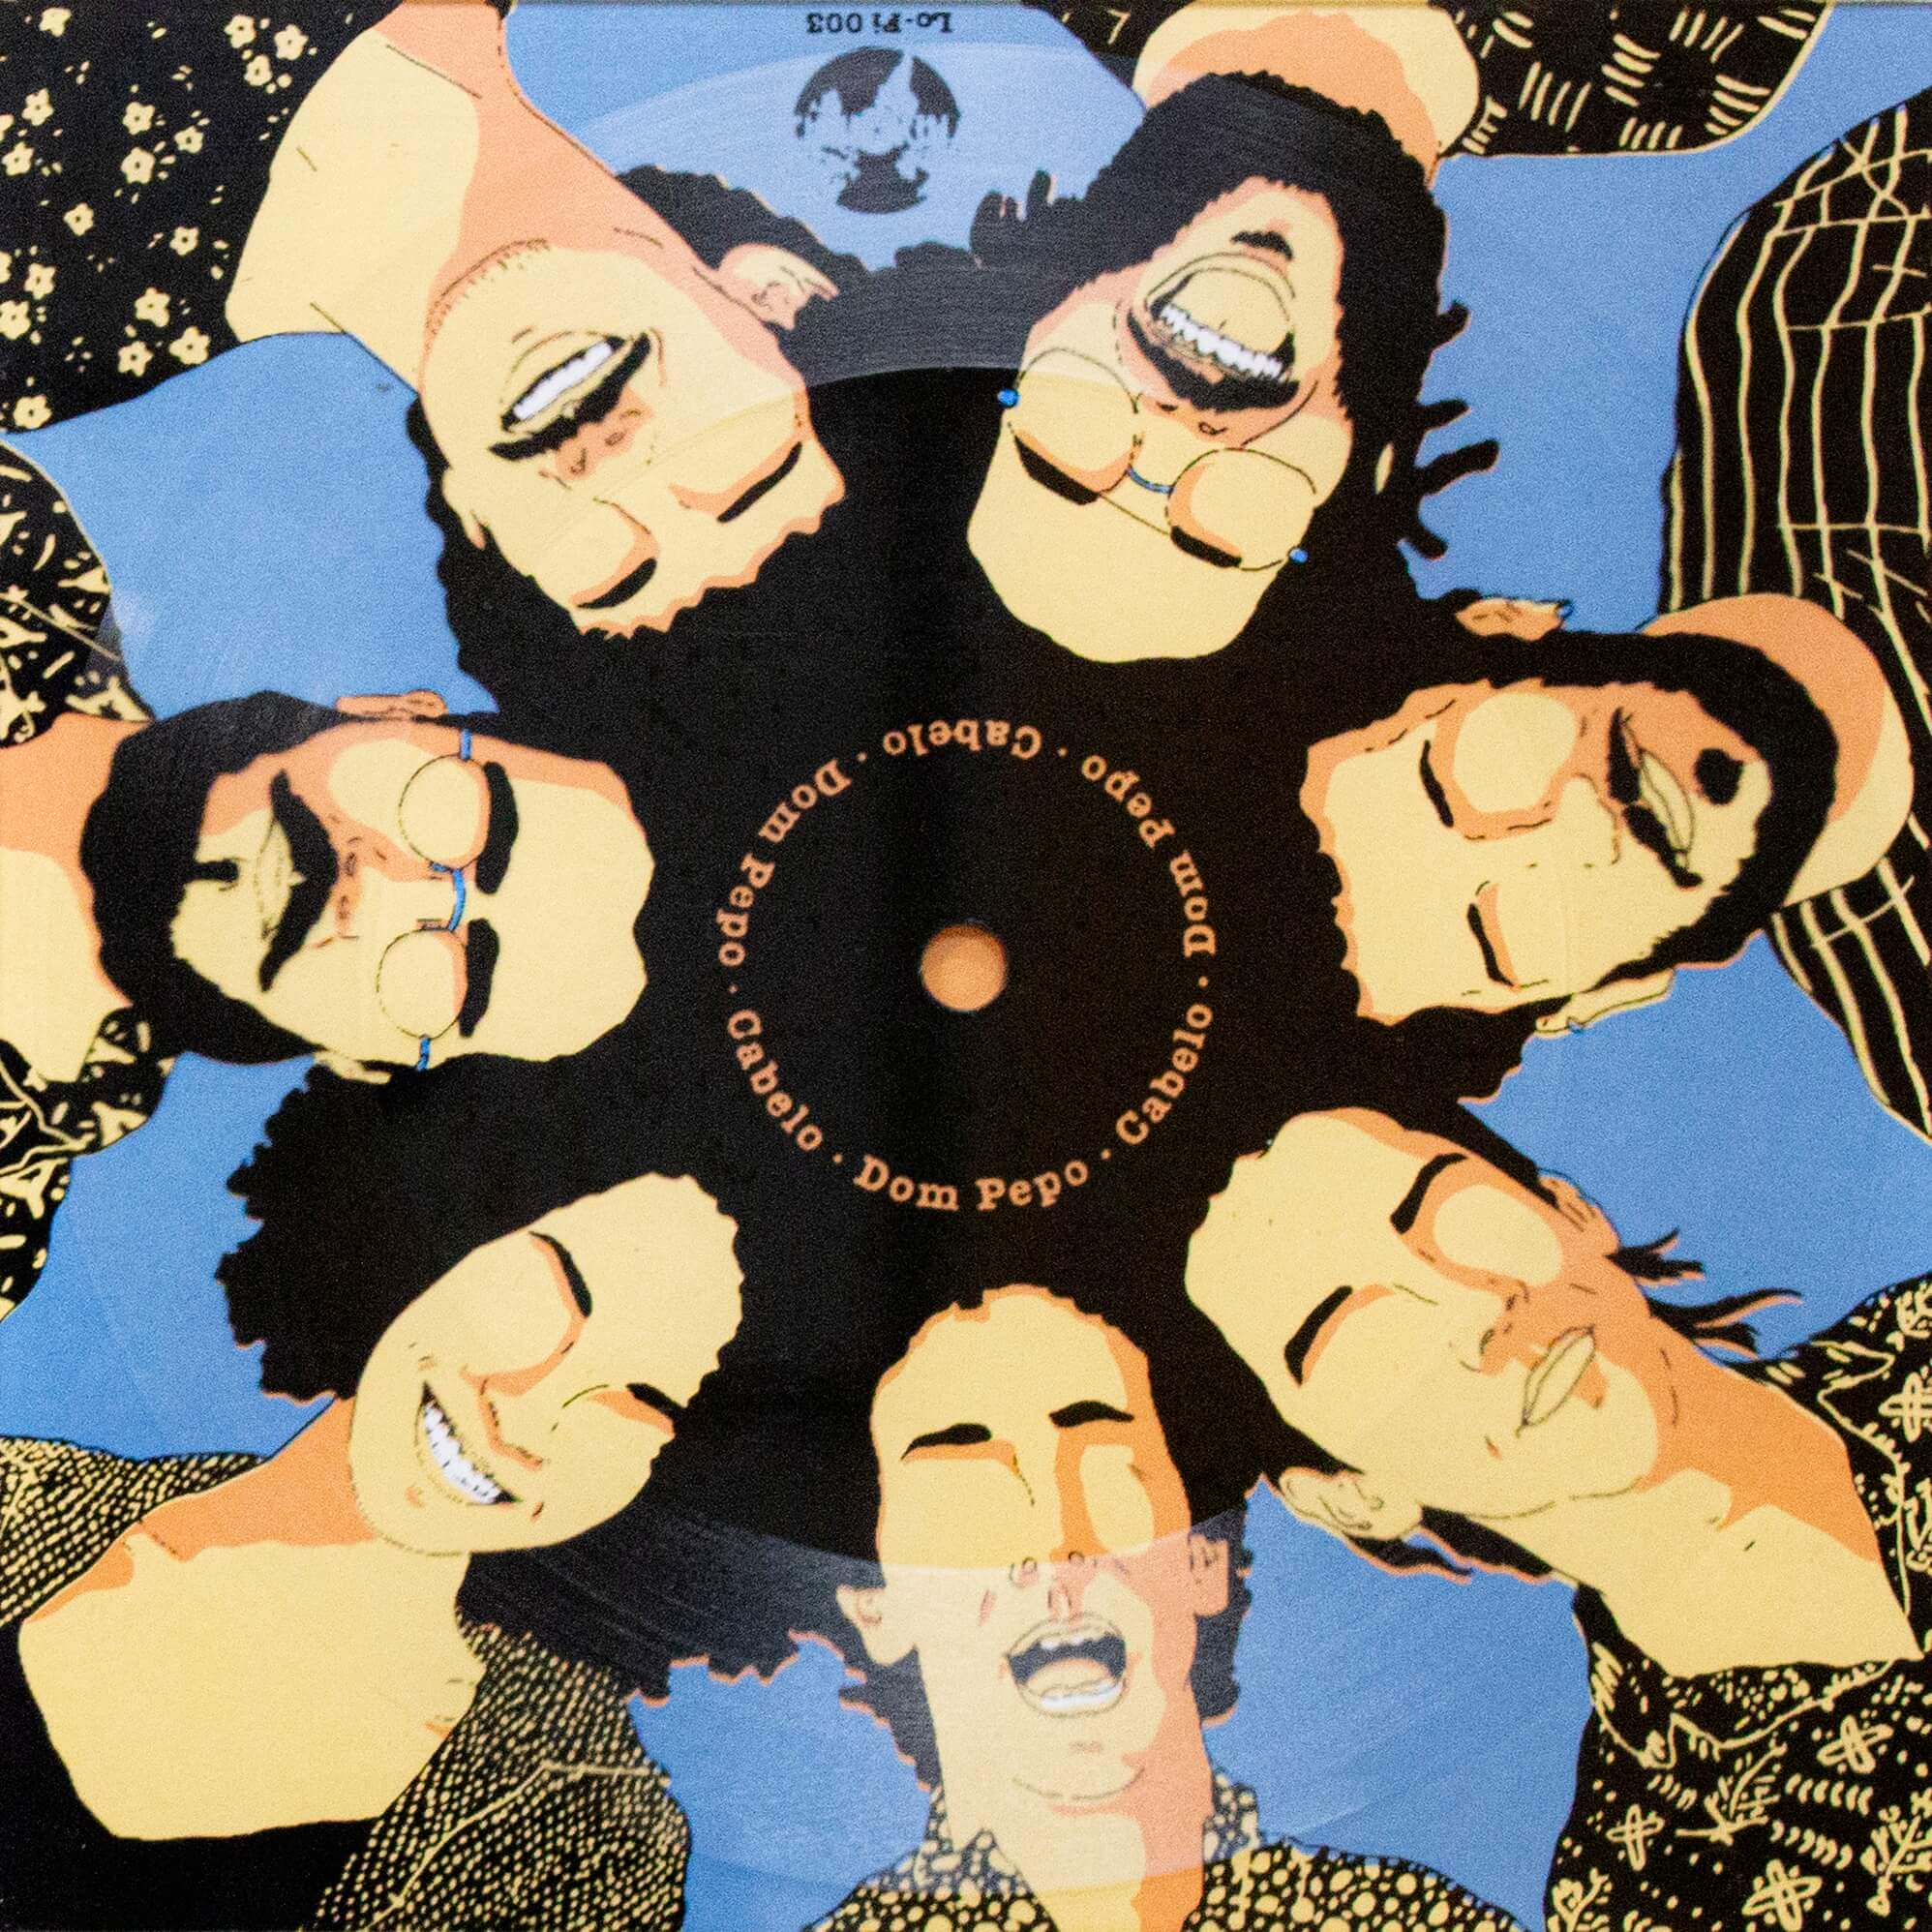 Capa do single Cabelo que traz o rosto dos músicos da banda Dom Pepo dispostos em círculo e seus cabelos se misturando.